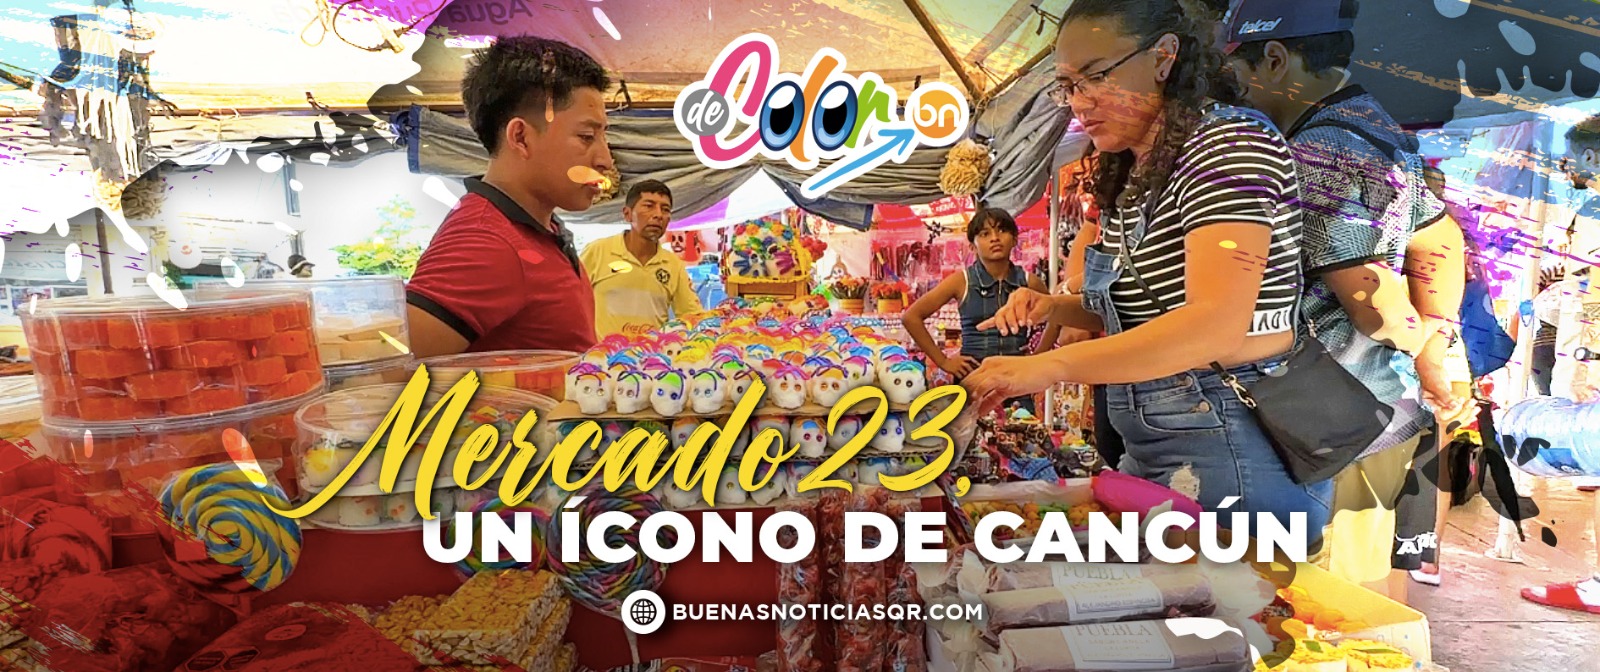 VIDEO: Mercado 23, un lugar que atesora la esencia de Cancún